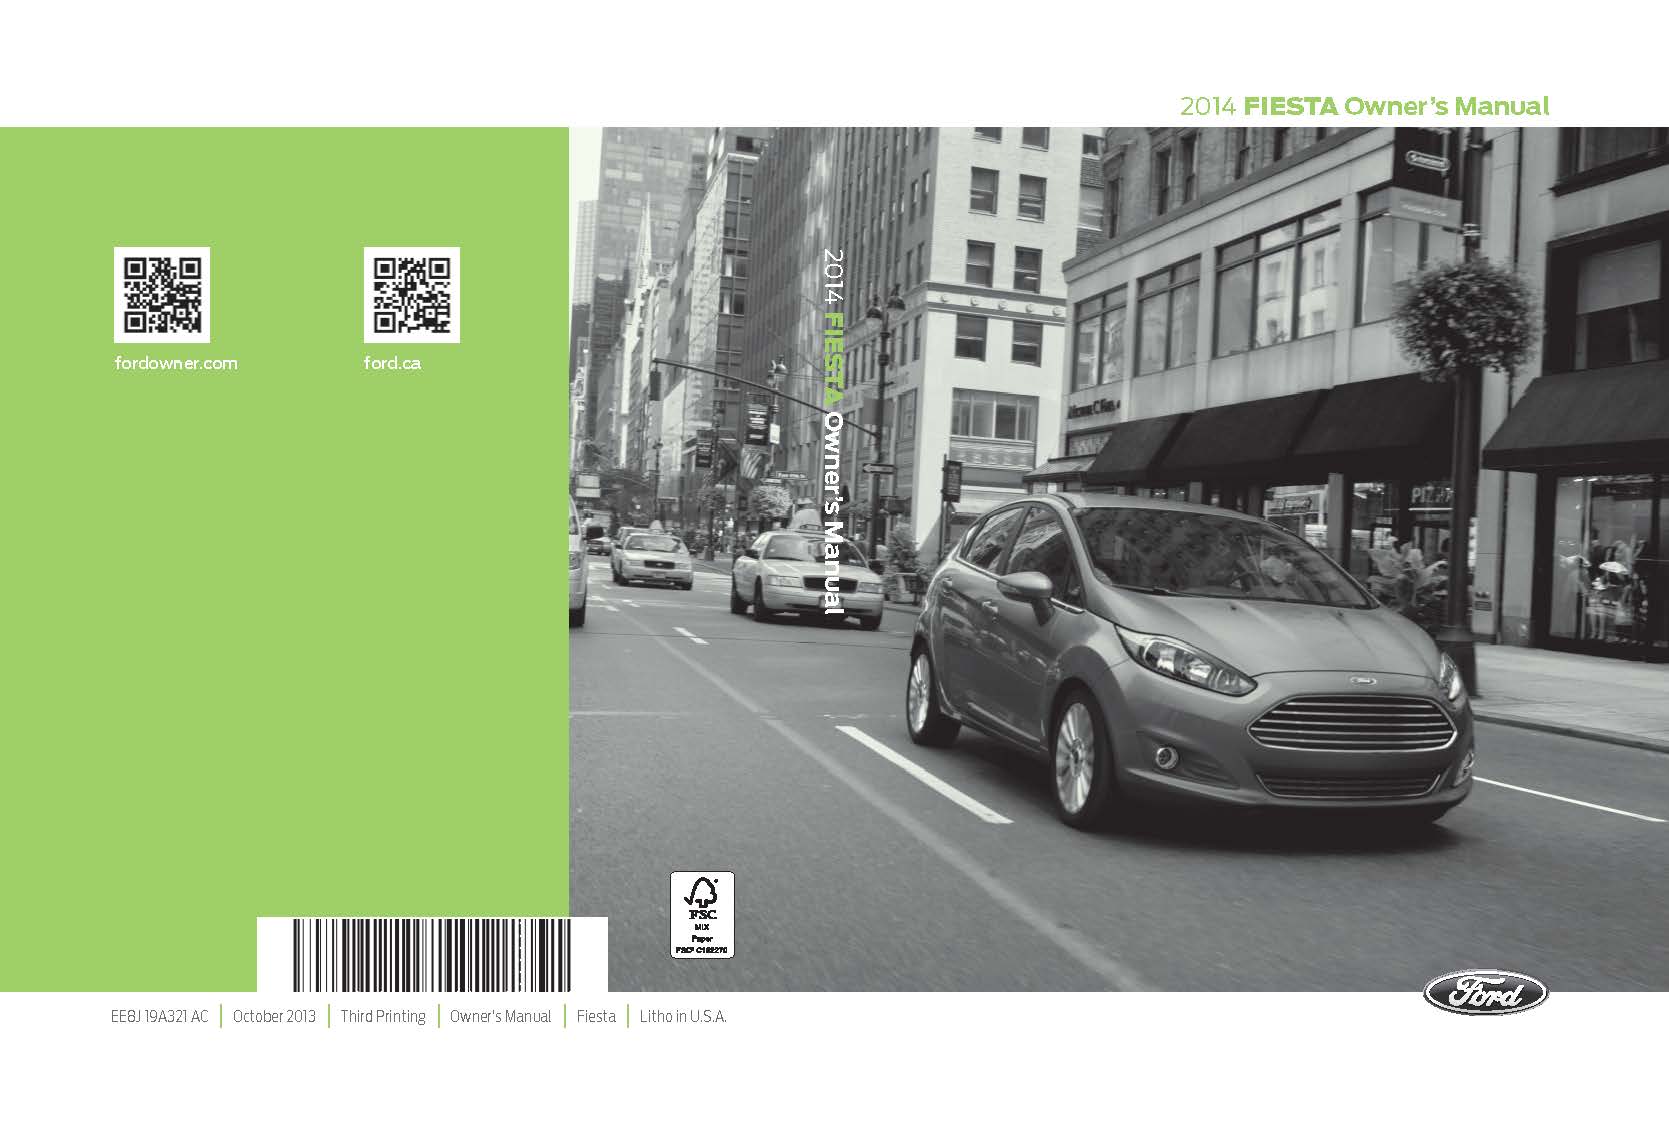 Ford Fiesta 2014 Owner’s Manual руководство по эксплуатации и техническому обслуживанию с бензиновыми двигателями EcoBoost Ti-VCT GTDi 1.0 л (995 см³) 125 л.с. (123 bhp)/92 кВт, Duratec Ti-VCT SIGMA 1.6 л (1596 см³) 122 л.с. (120 bhp)/90 кВт и  EcoBoost Ti-VCT GTDi 1.6 л (1596 см³) 200 (197 bhp) л.с./147 кВт. Инструкция пользователя Форд Фиеста и Фиеста ST (Северная Америка owner guide) переднеприводные модели седьмого поколения с кузовами седан и пятидверный хэтчбек выпуска с 2008 года читать онлайн, скачать